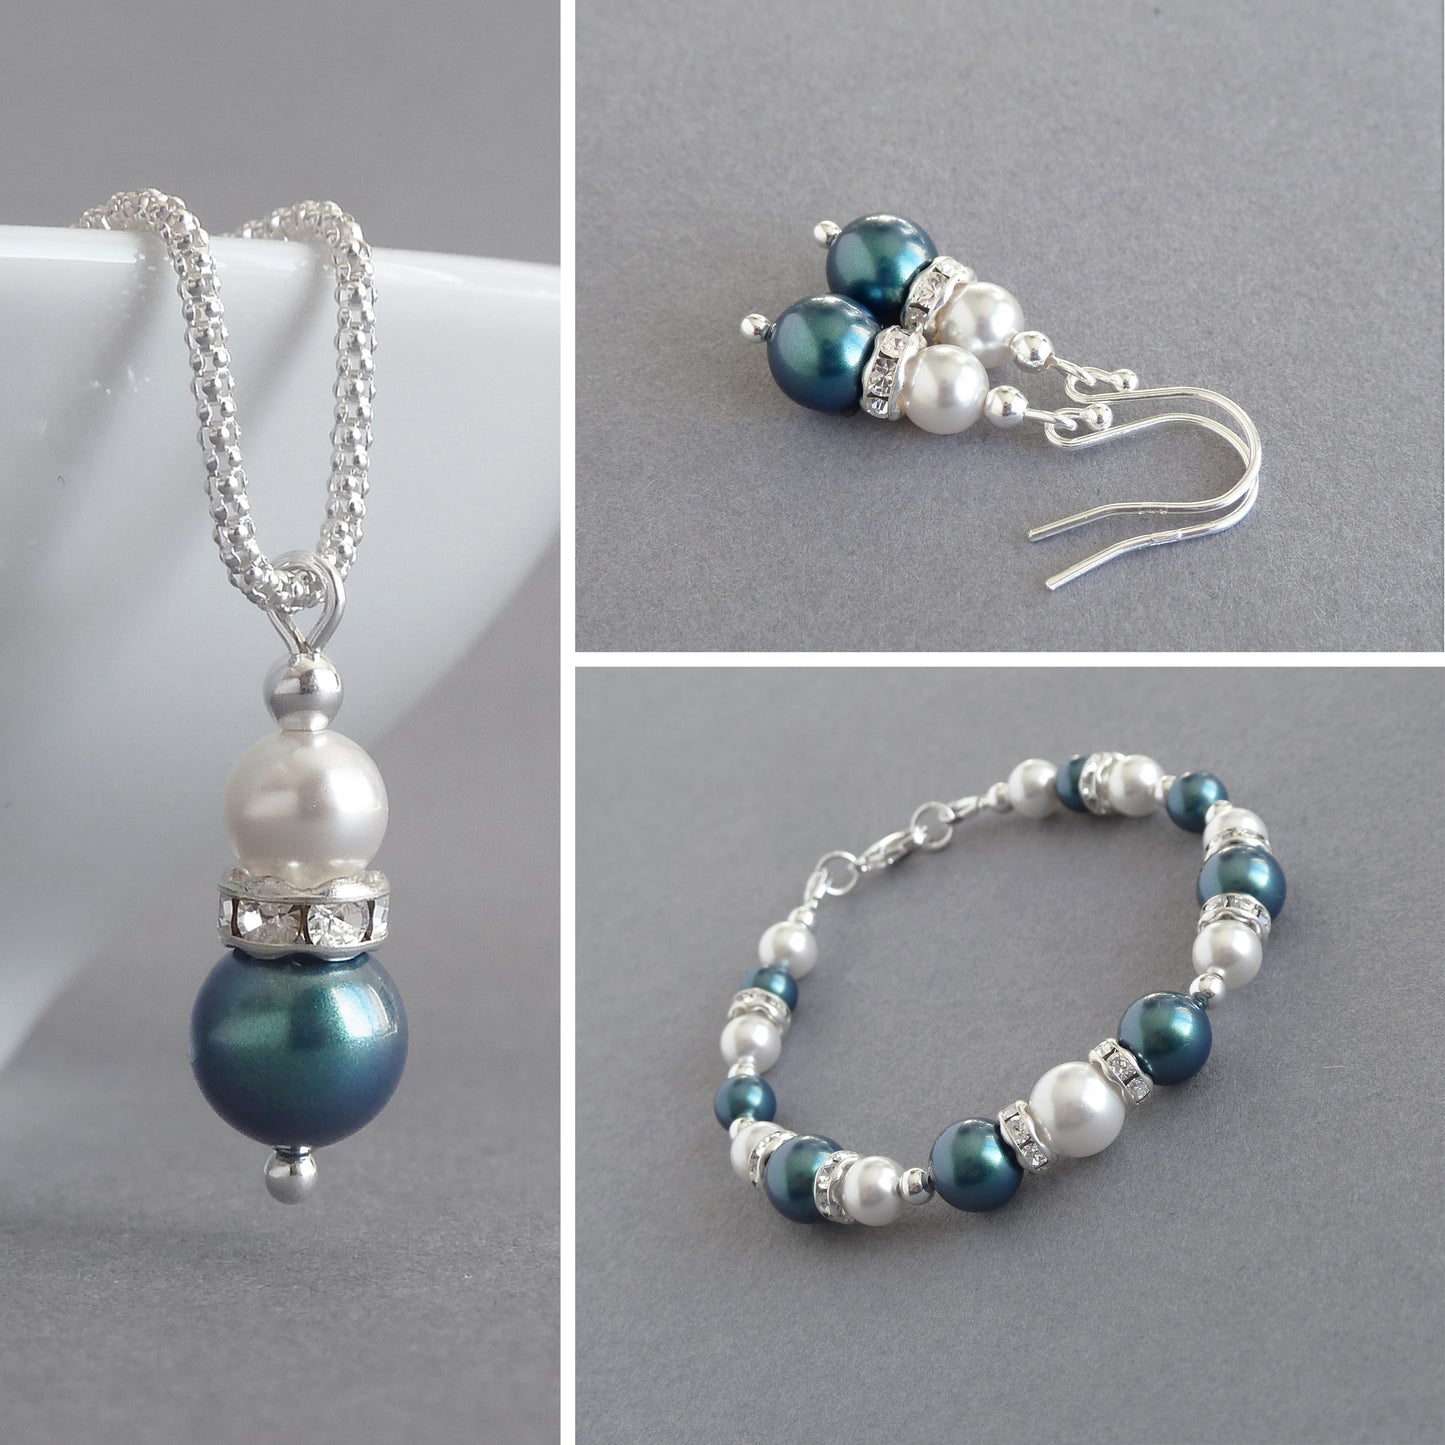 Dark green pearl jewellery set from Anna King Jewellery